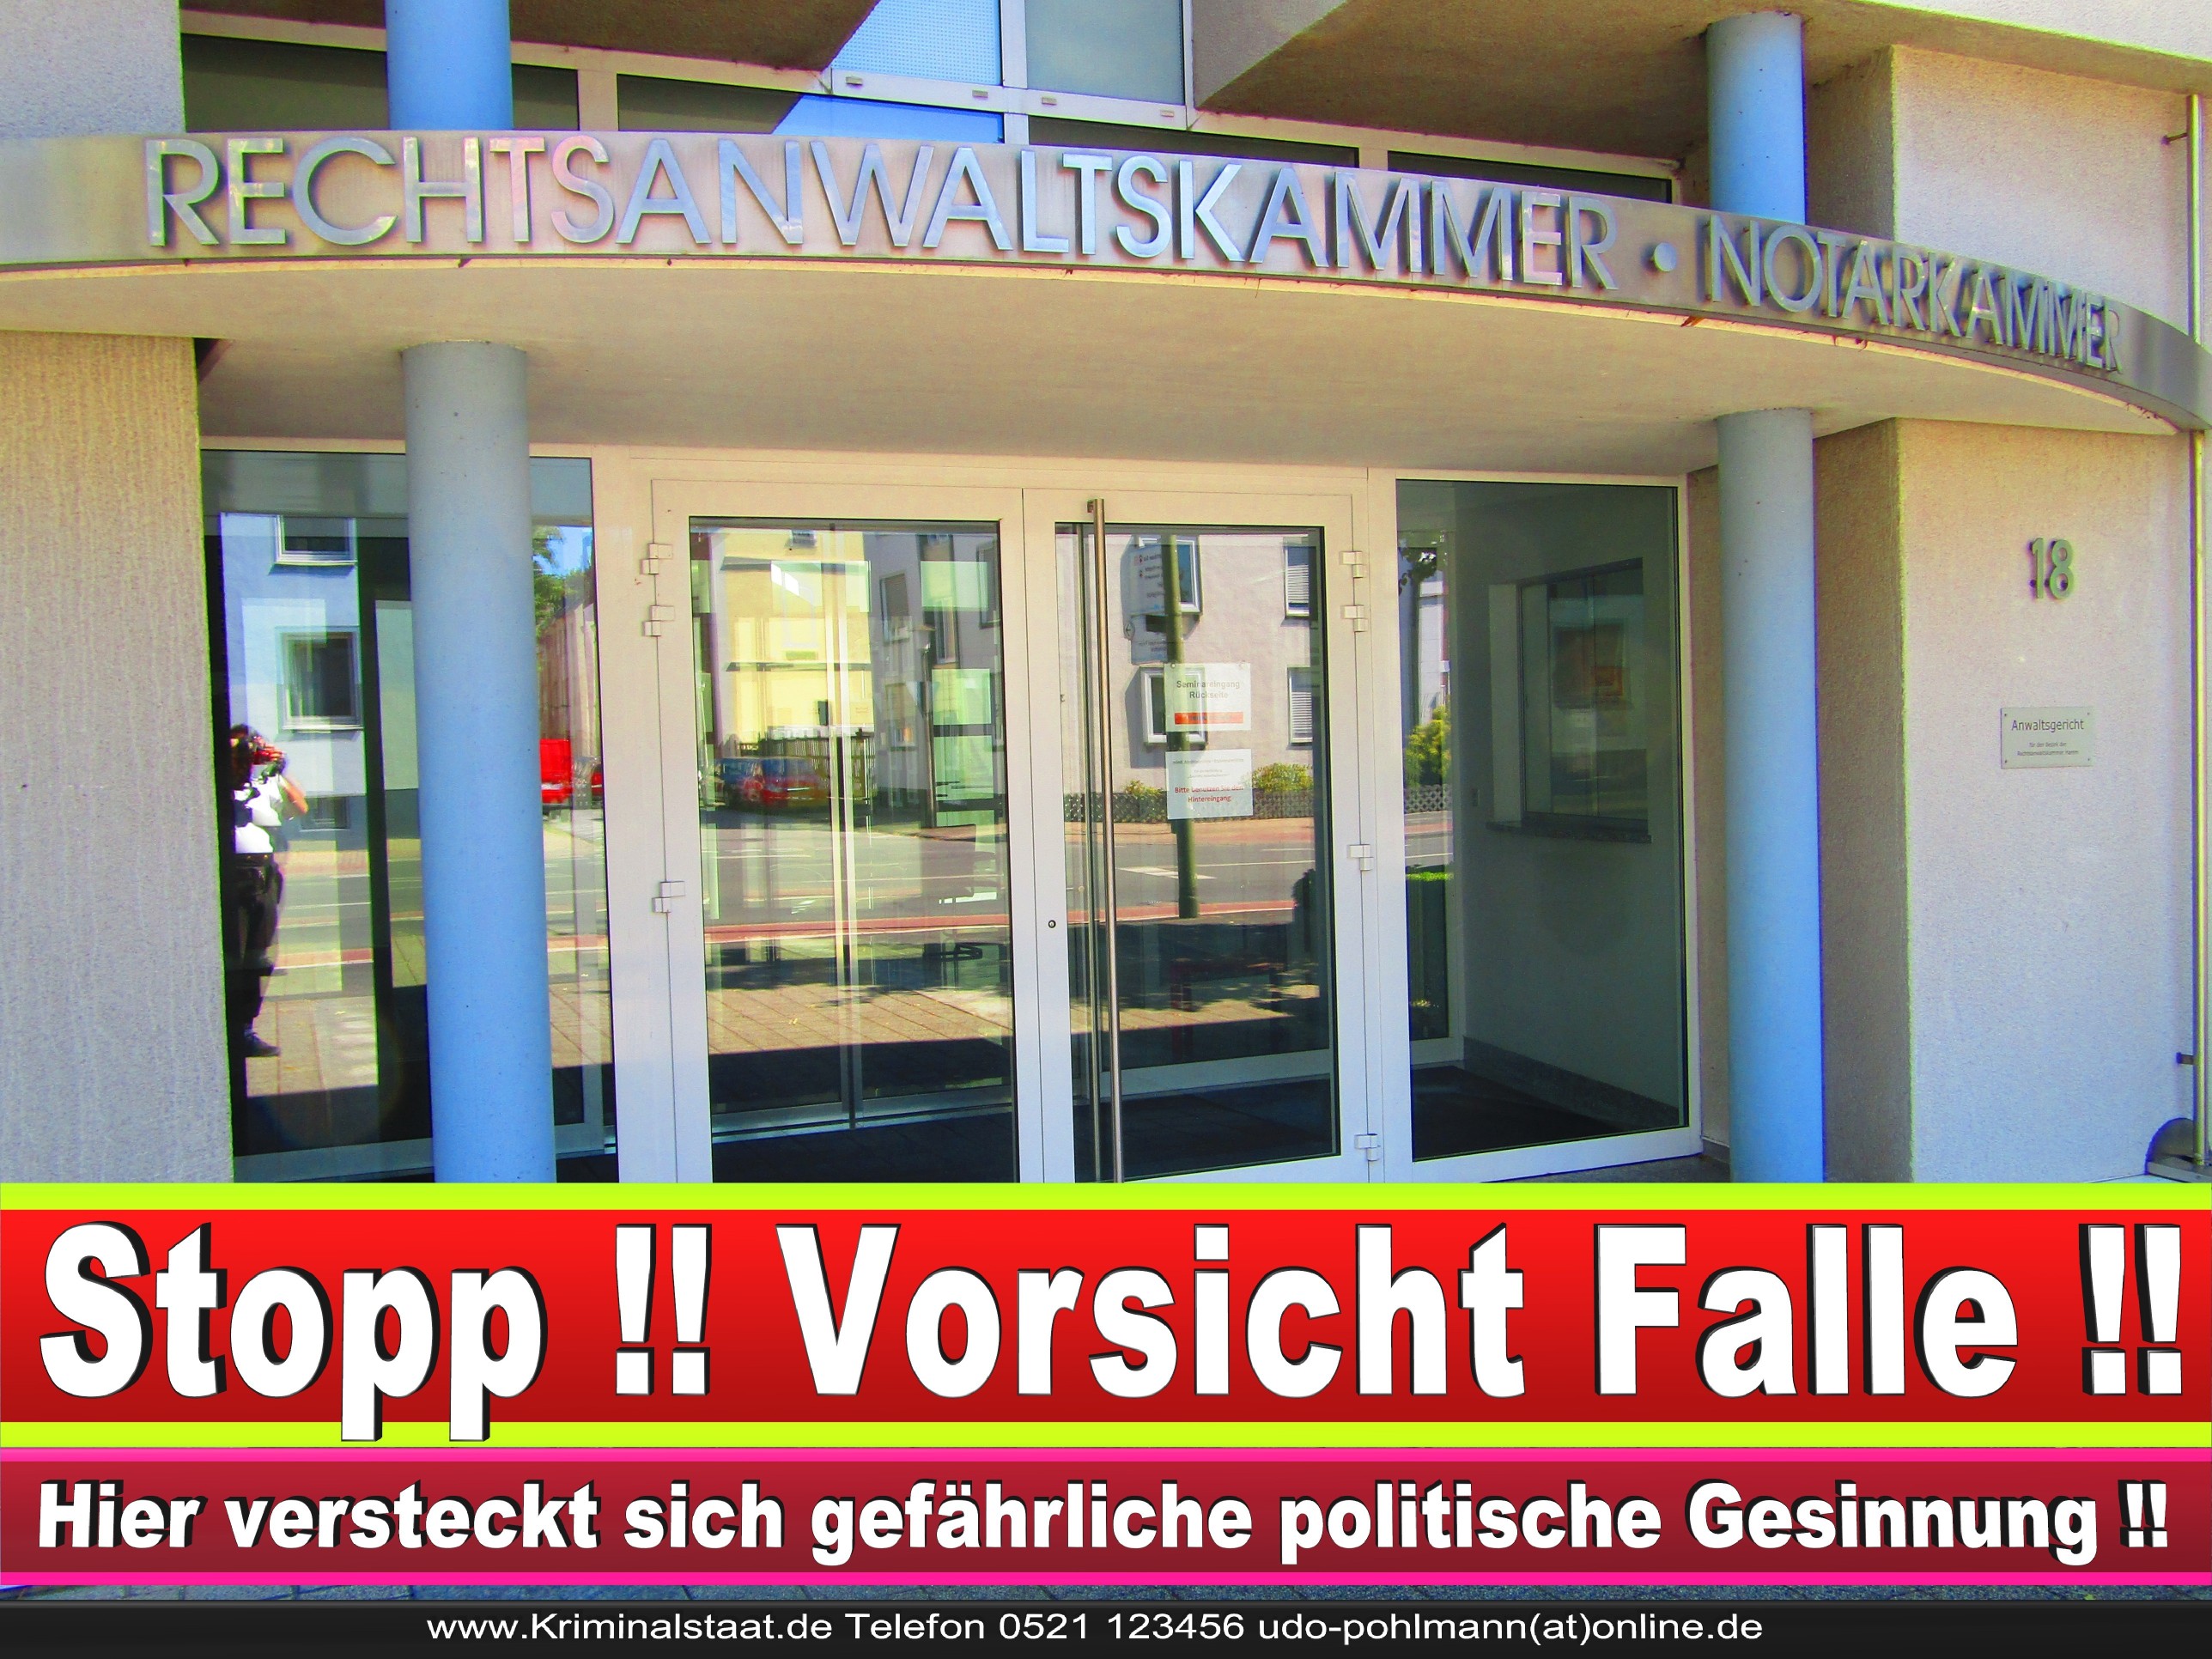 Rechtsanwaltskammer Hamm NRW Justizminister Rechtsanwalt Notar Vermögensverfall Urteil Rechtsprechung CDU SPD FDP Berufsordnung Rechtsanwälte Rechtsprechung (7)